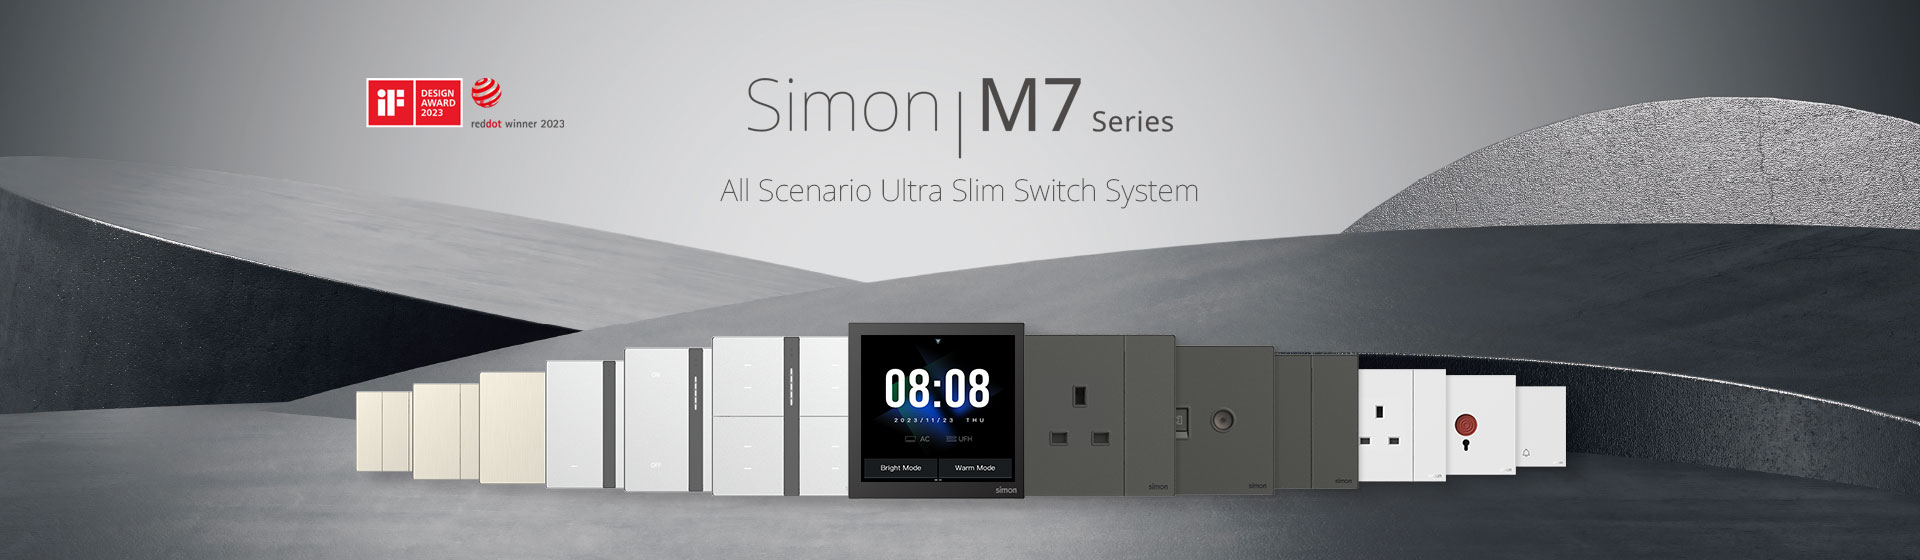 simon series m7